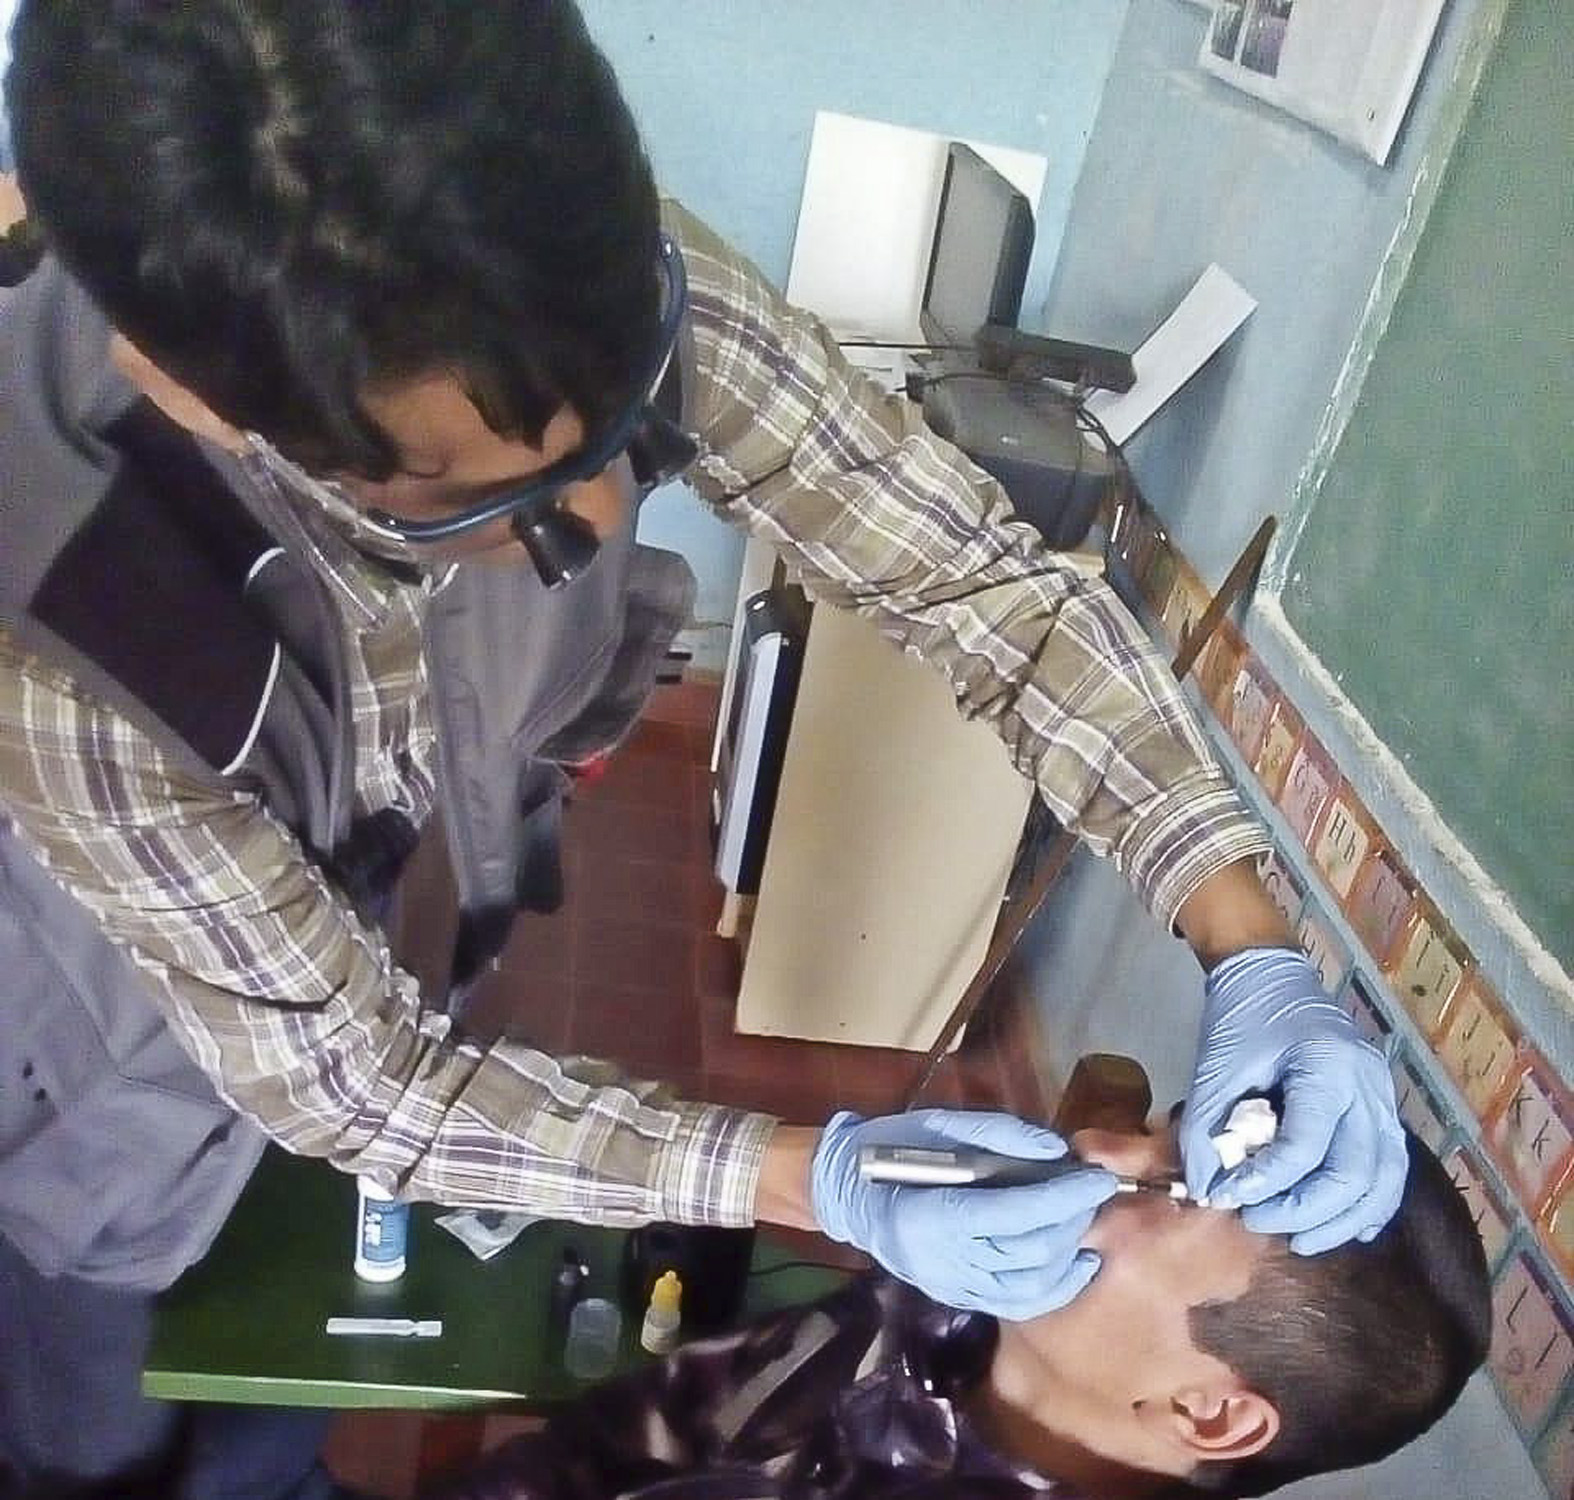 Jornadas gratuitas de atención oftalmológica en Concepción, realizadas por profesional paraguayo